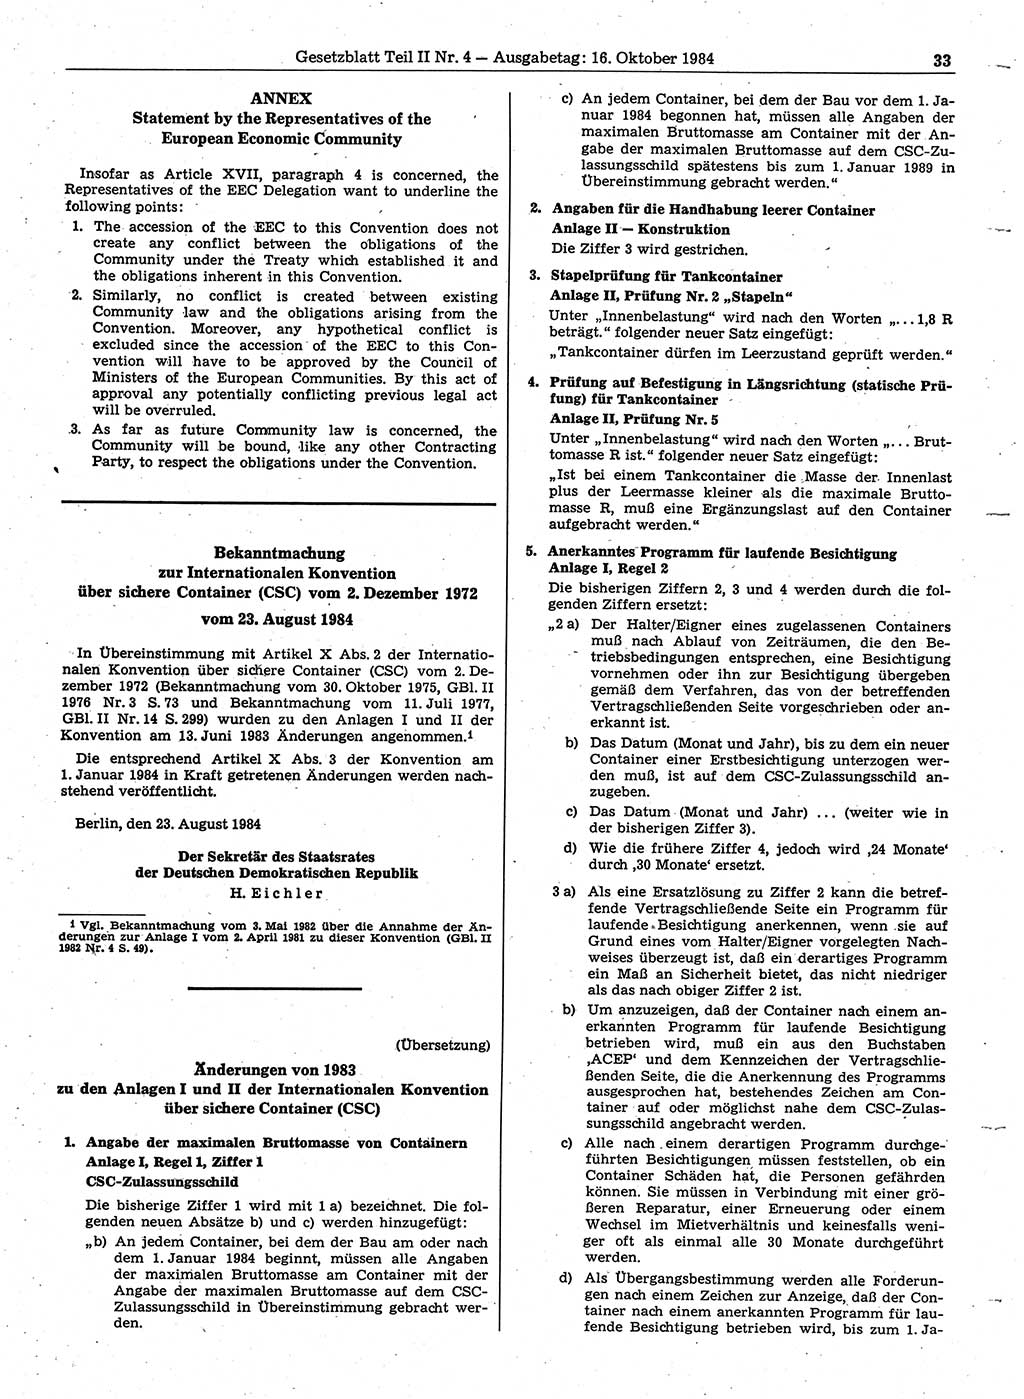 Gesetzblatt (GBl.) der Deutschen Demokratischen Republik (DDR) Teil ⅠⅠ 1984, Seite 33 (GBl. DDR ⅠⅠ 1984, S. 33)